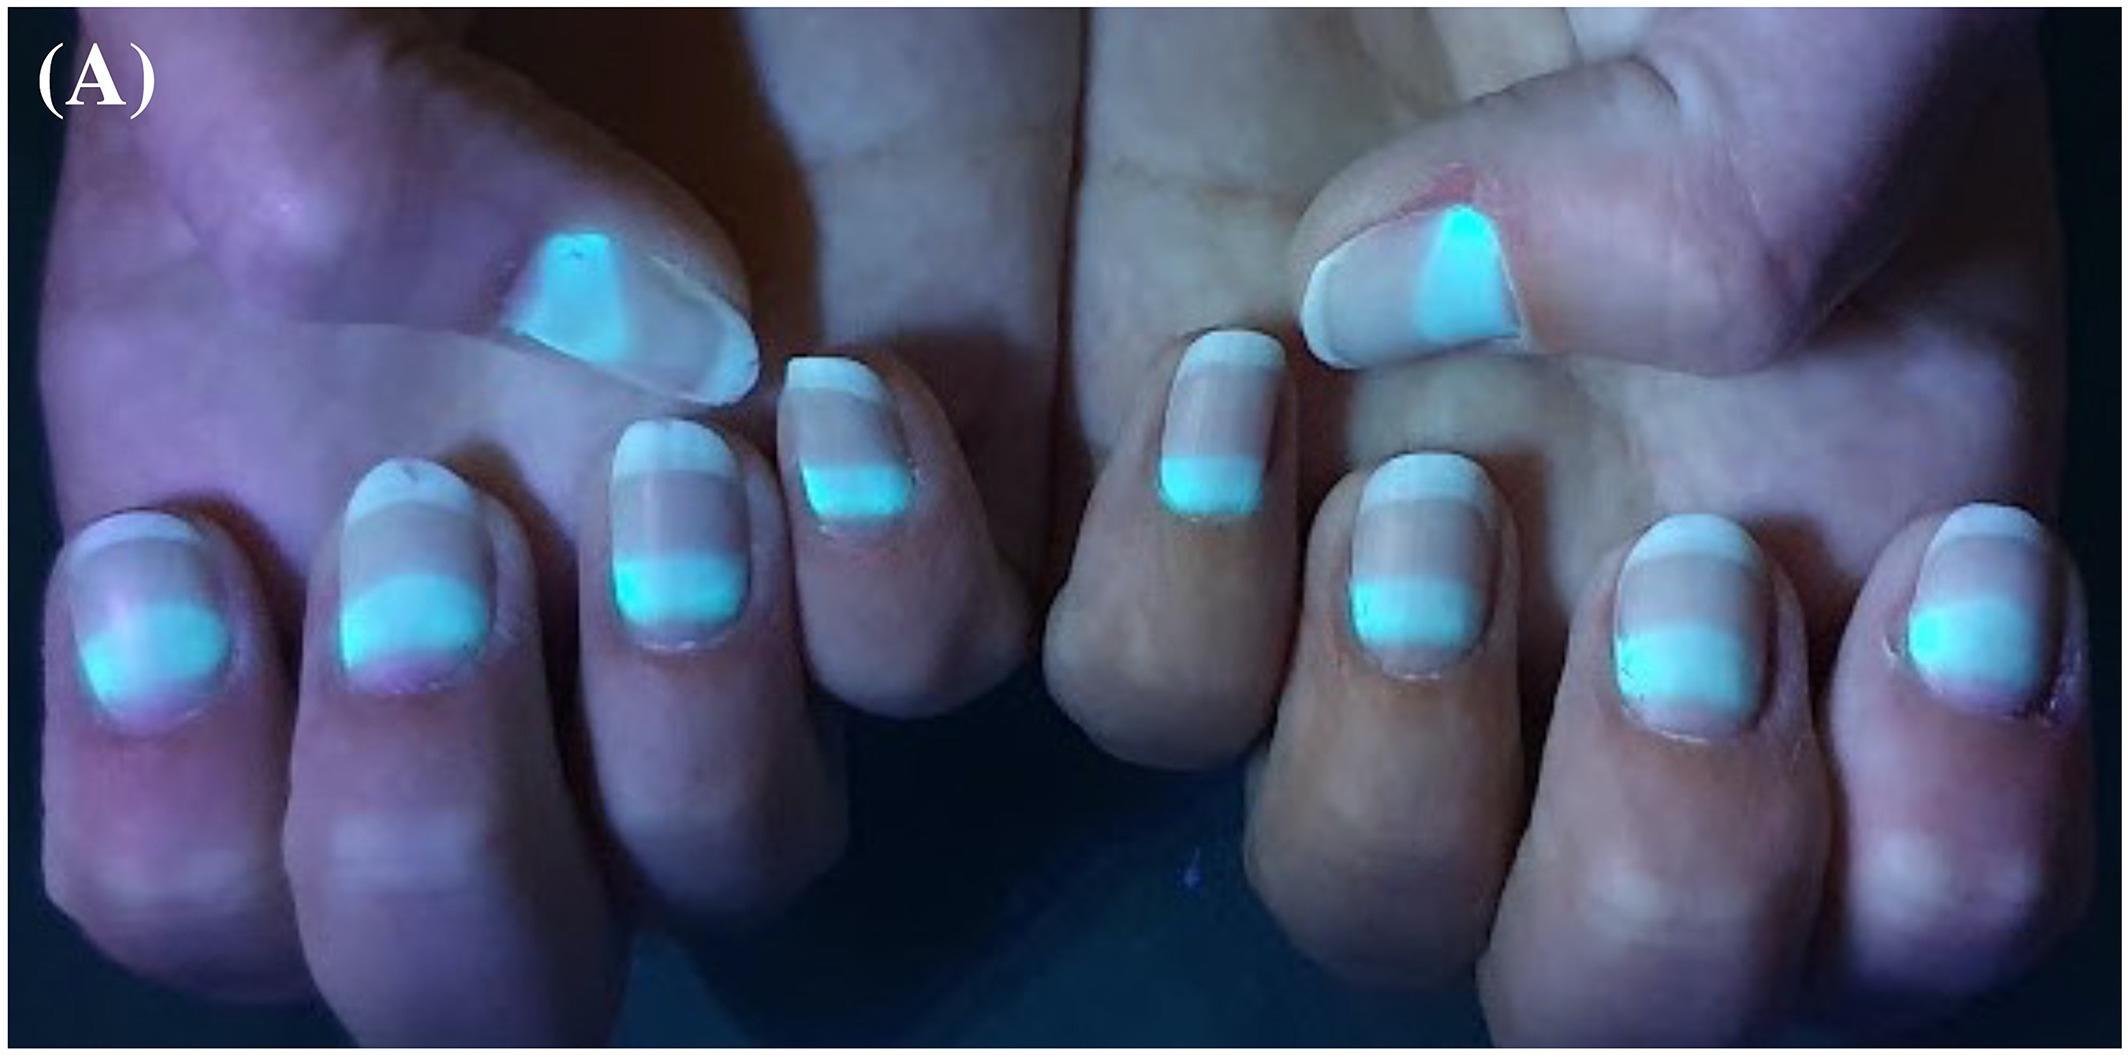 Ногти светятся в ультрафиолете после коронавируса